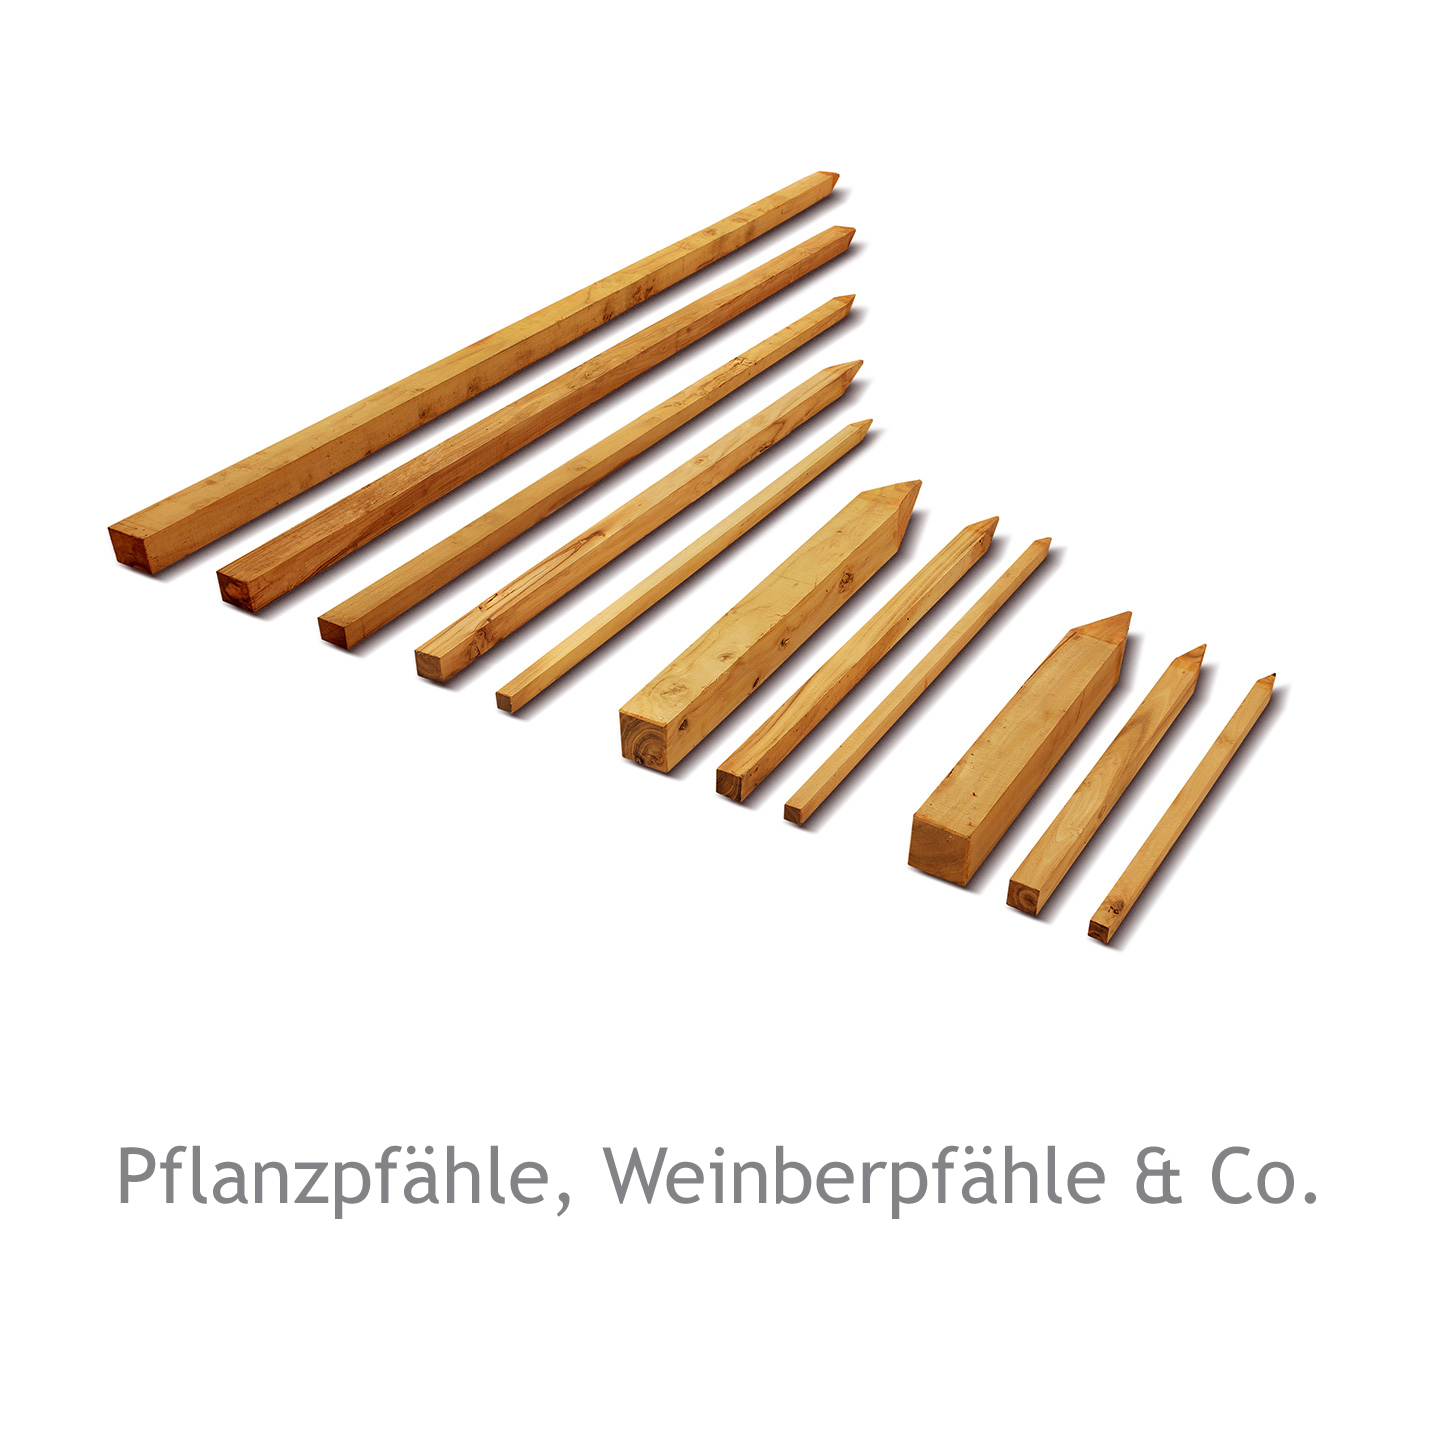 Pflanzpfähle, Weinbergpfähle & Co.